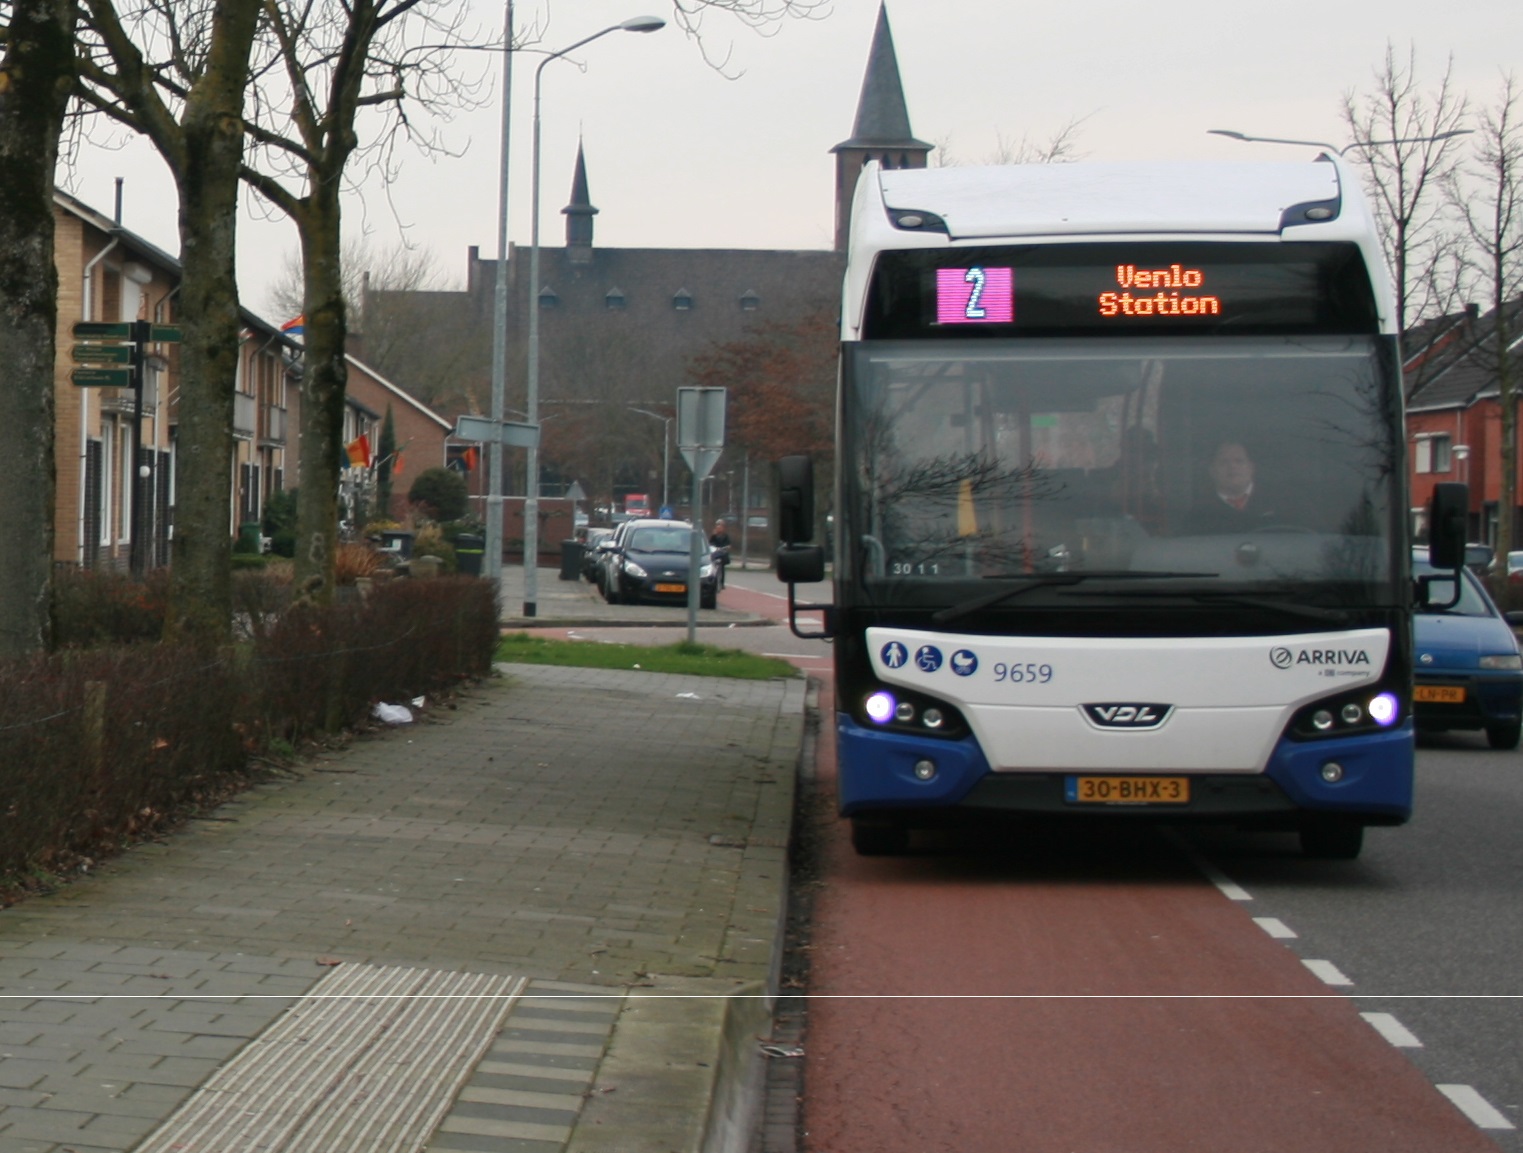 Sinds 10 december 2017 rijdt Arriva de hele stadsdienst van Venlo met elektrische bussen.